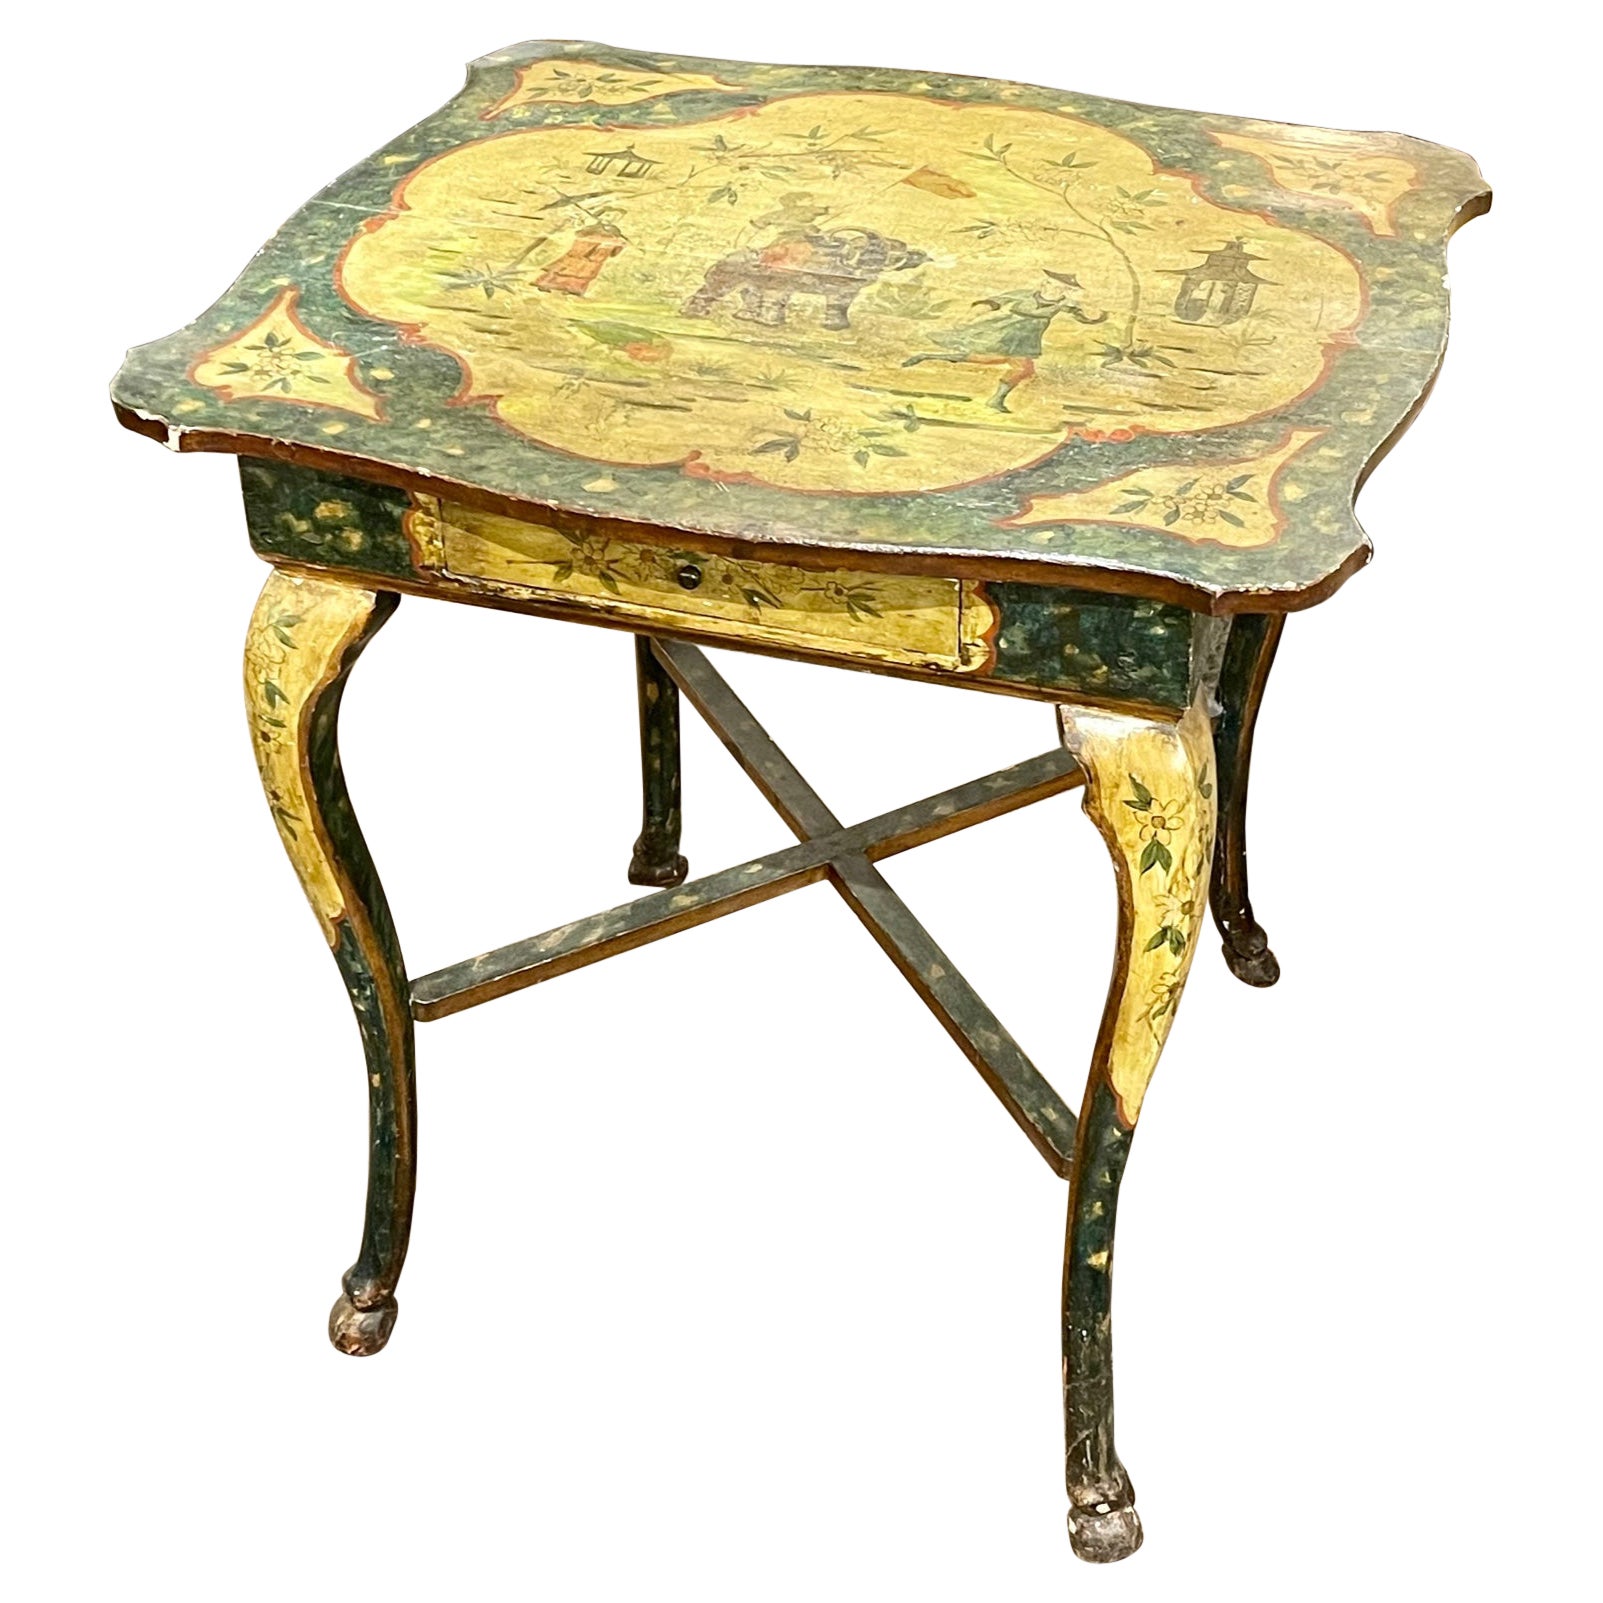 Table d'appoint peinte de style chinoiserie italienne du 19ème siècle